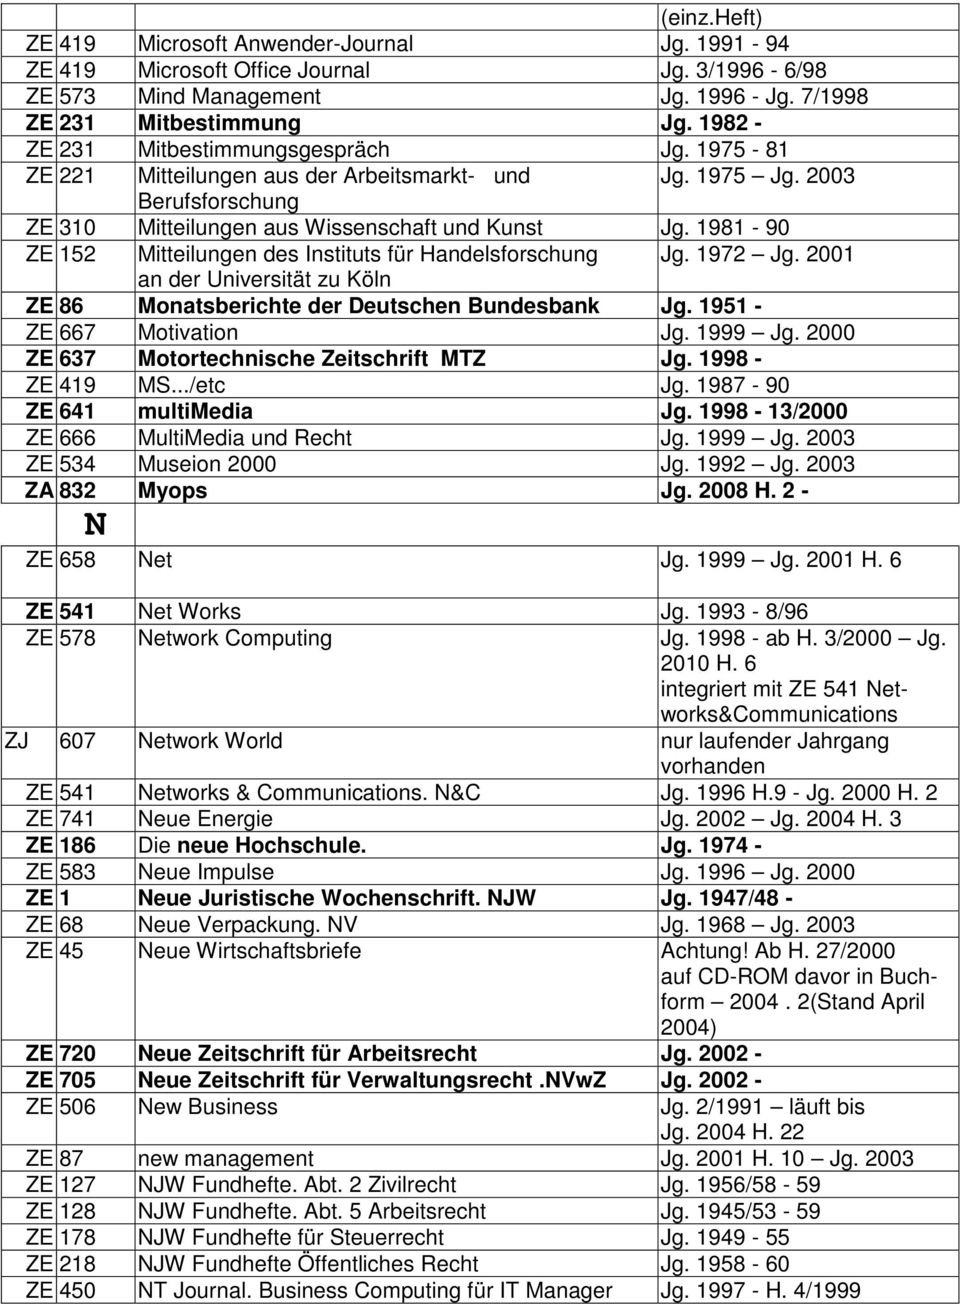 1981-90 ZE 152 Mitteilungen des Instituts für Handelsforschung Jg. 1972 Jg. 2001 an der Universität zu Köln ZE 86 Monatsberichte der Deutschen Bundesbank Jg. 1951 - ZE 667 Motivation Jg. 1999 Jg.